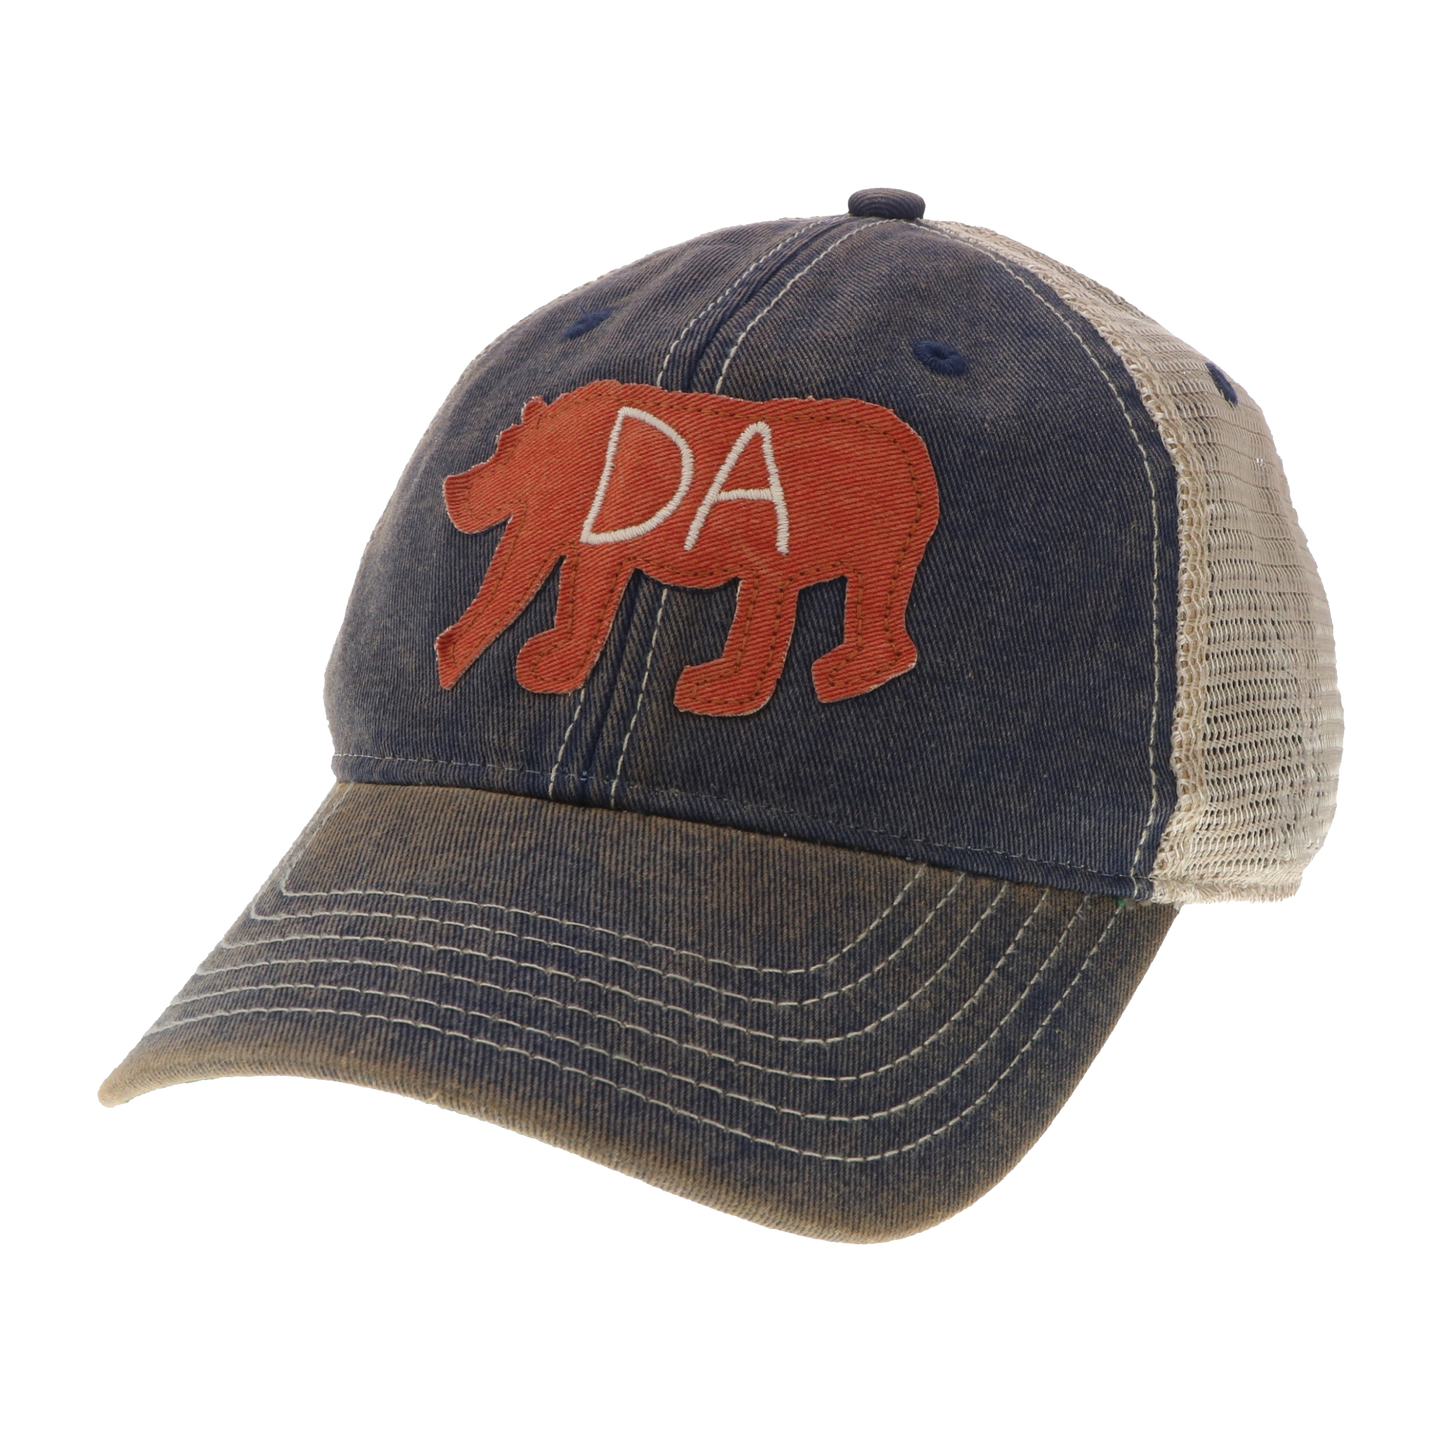 Da Bear® Old Favorite Trucker Hat in Navy